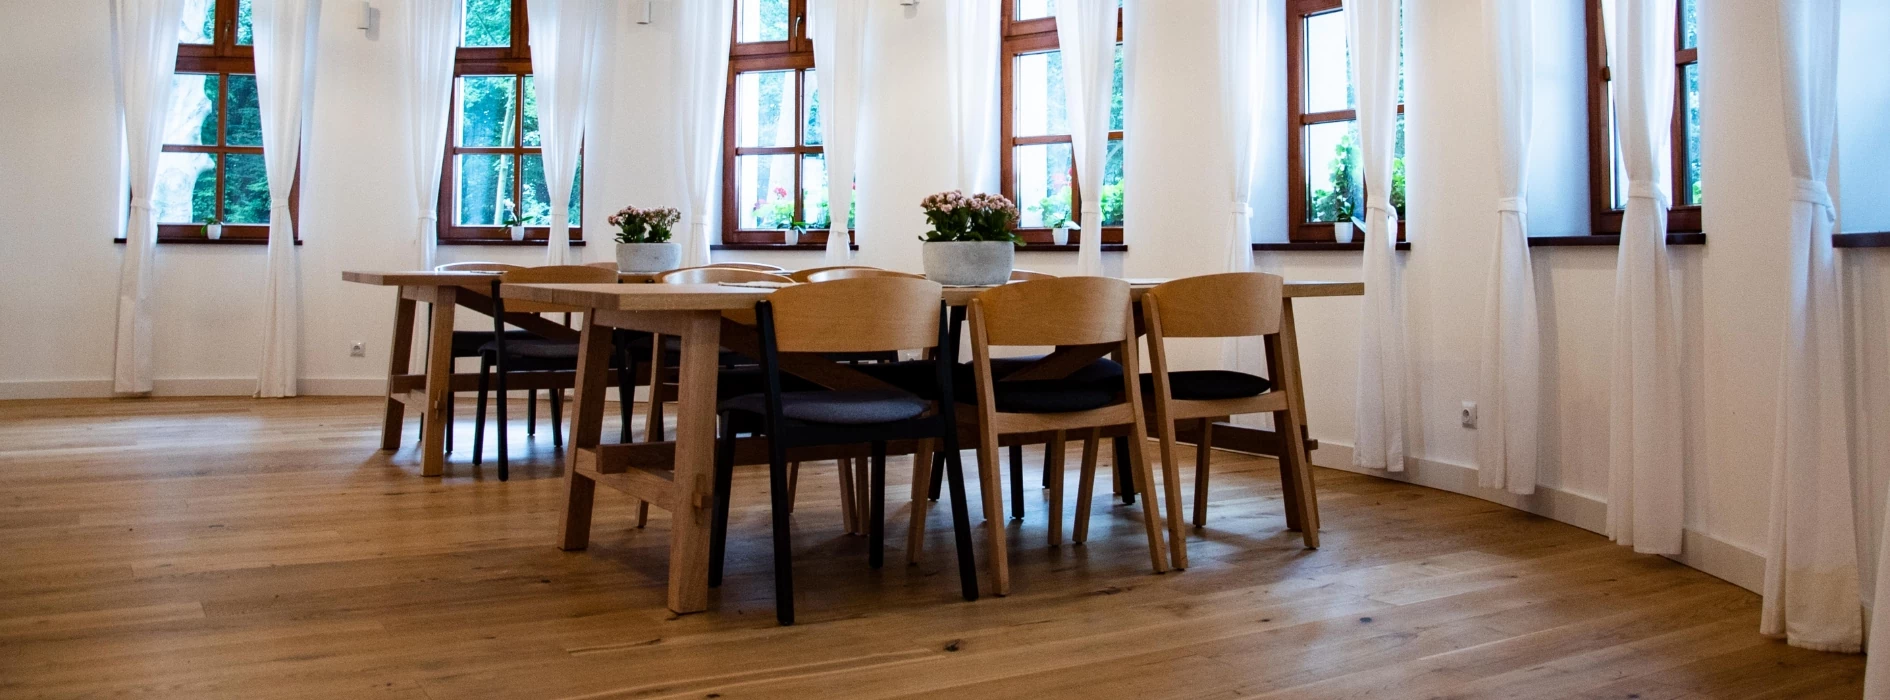 jadalnia salon z drewnianymi stołami